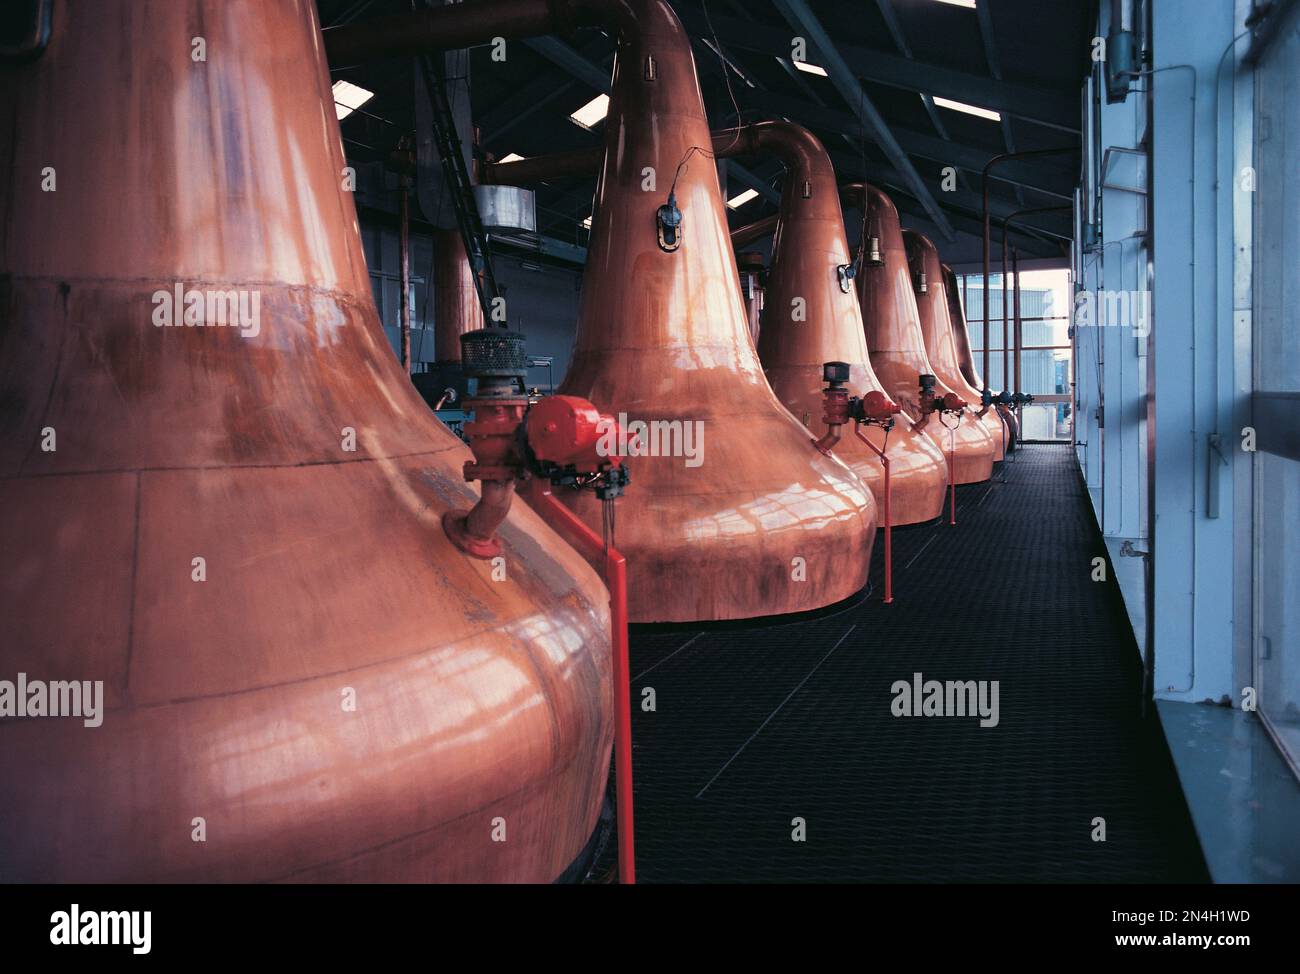 Scozia. Il whisky di rame viene distillato in una distilleria. Foto Stock